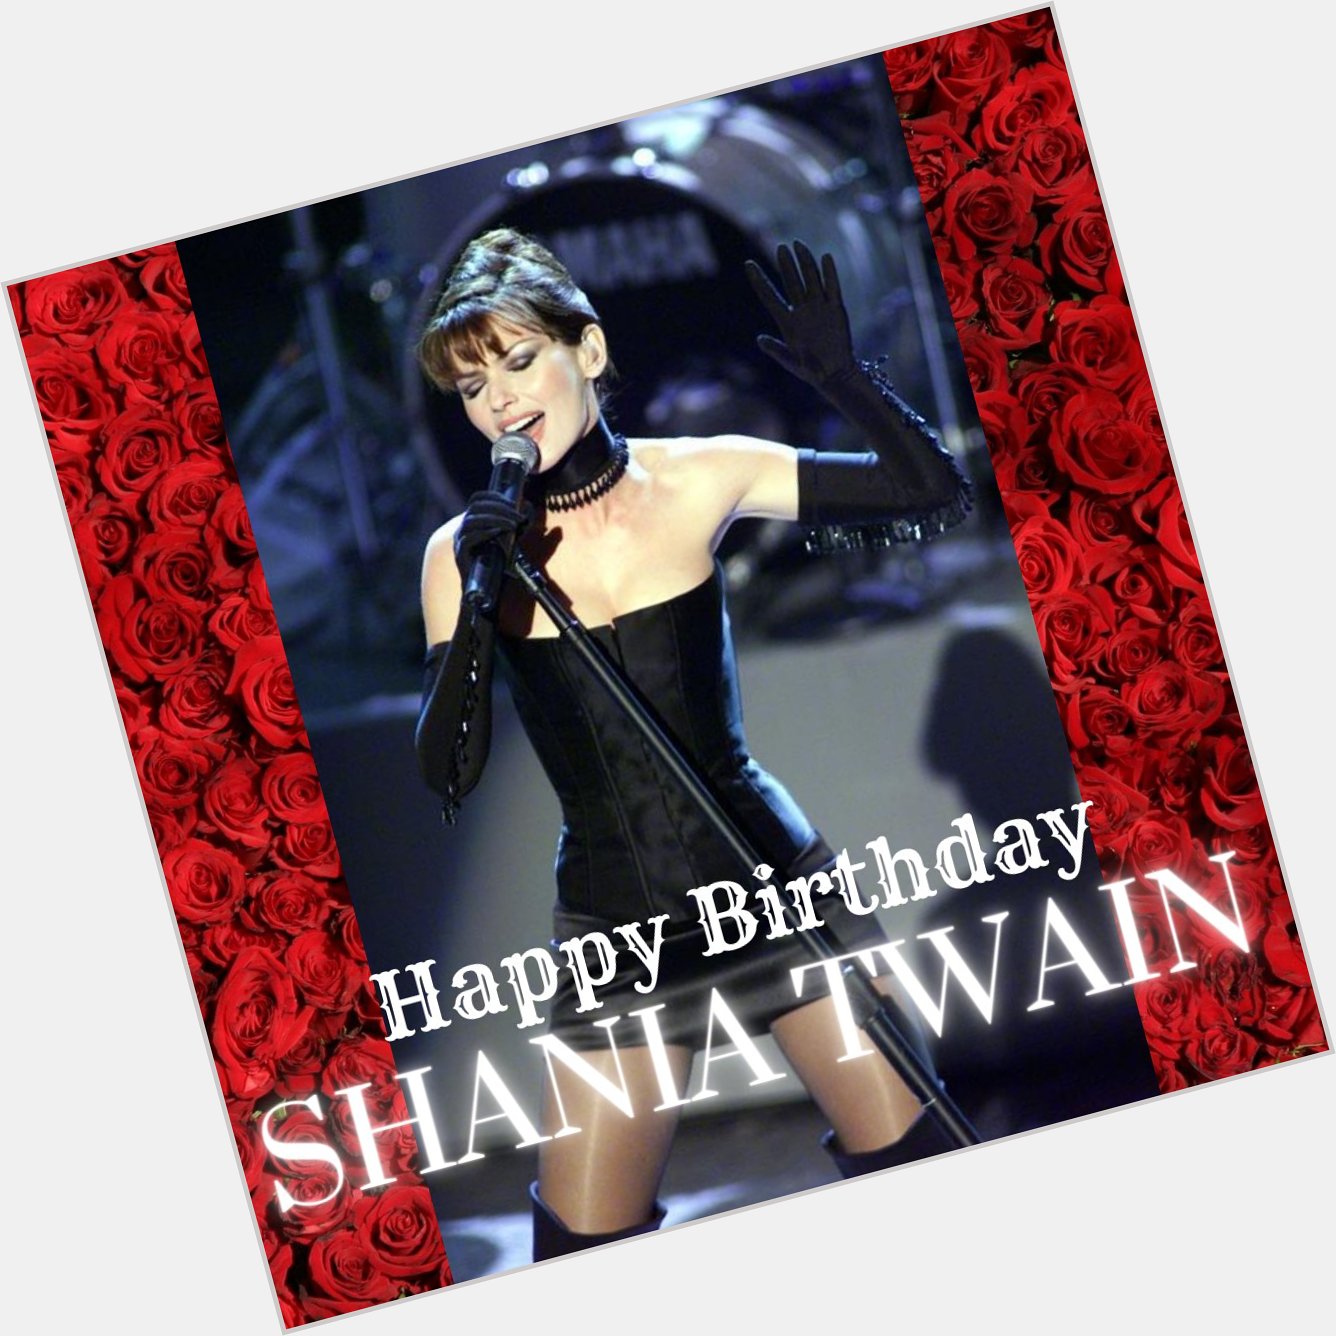 Wishing the beautiful Shania Twain a happy birthday!  